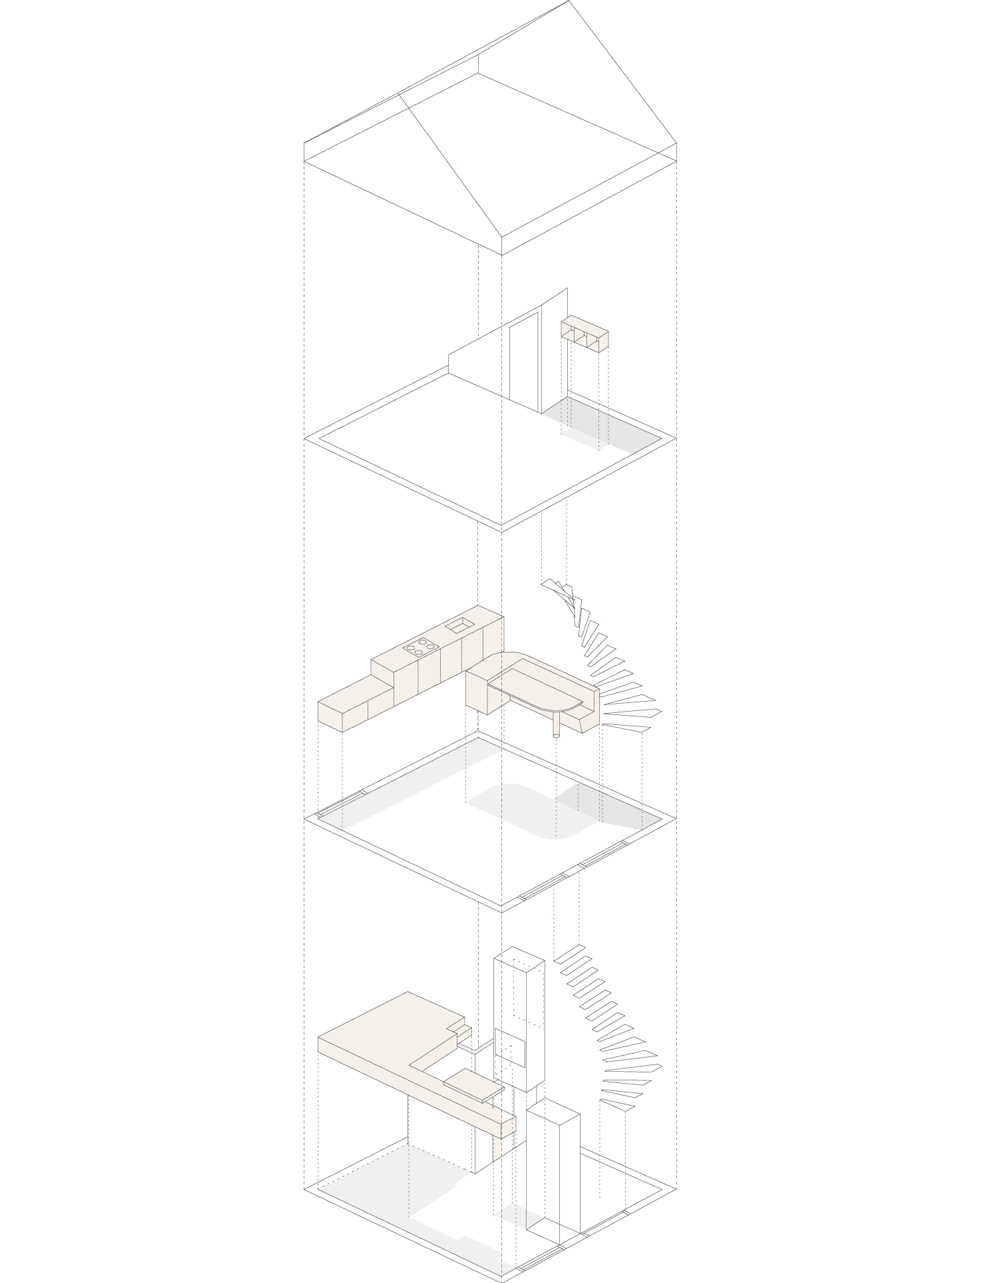 penataan-layout-renovasi-desain-interior-bangunan rumah tua-abad ke-17-desain ruang dan rumahku-011